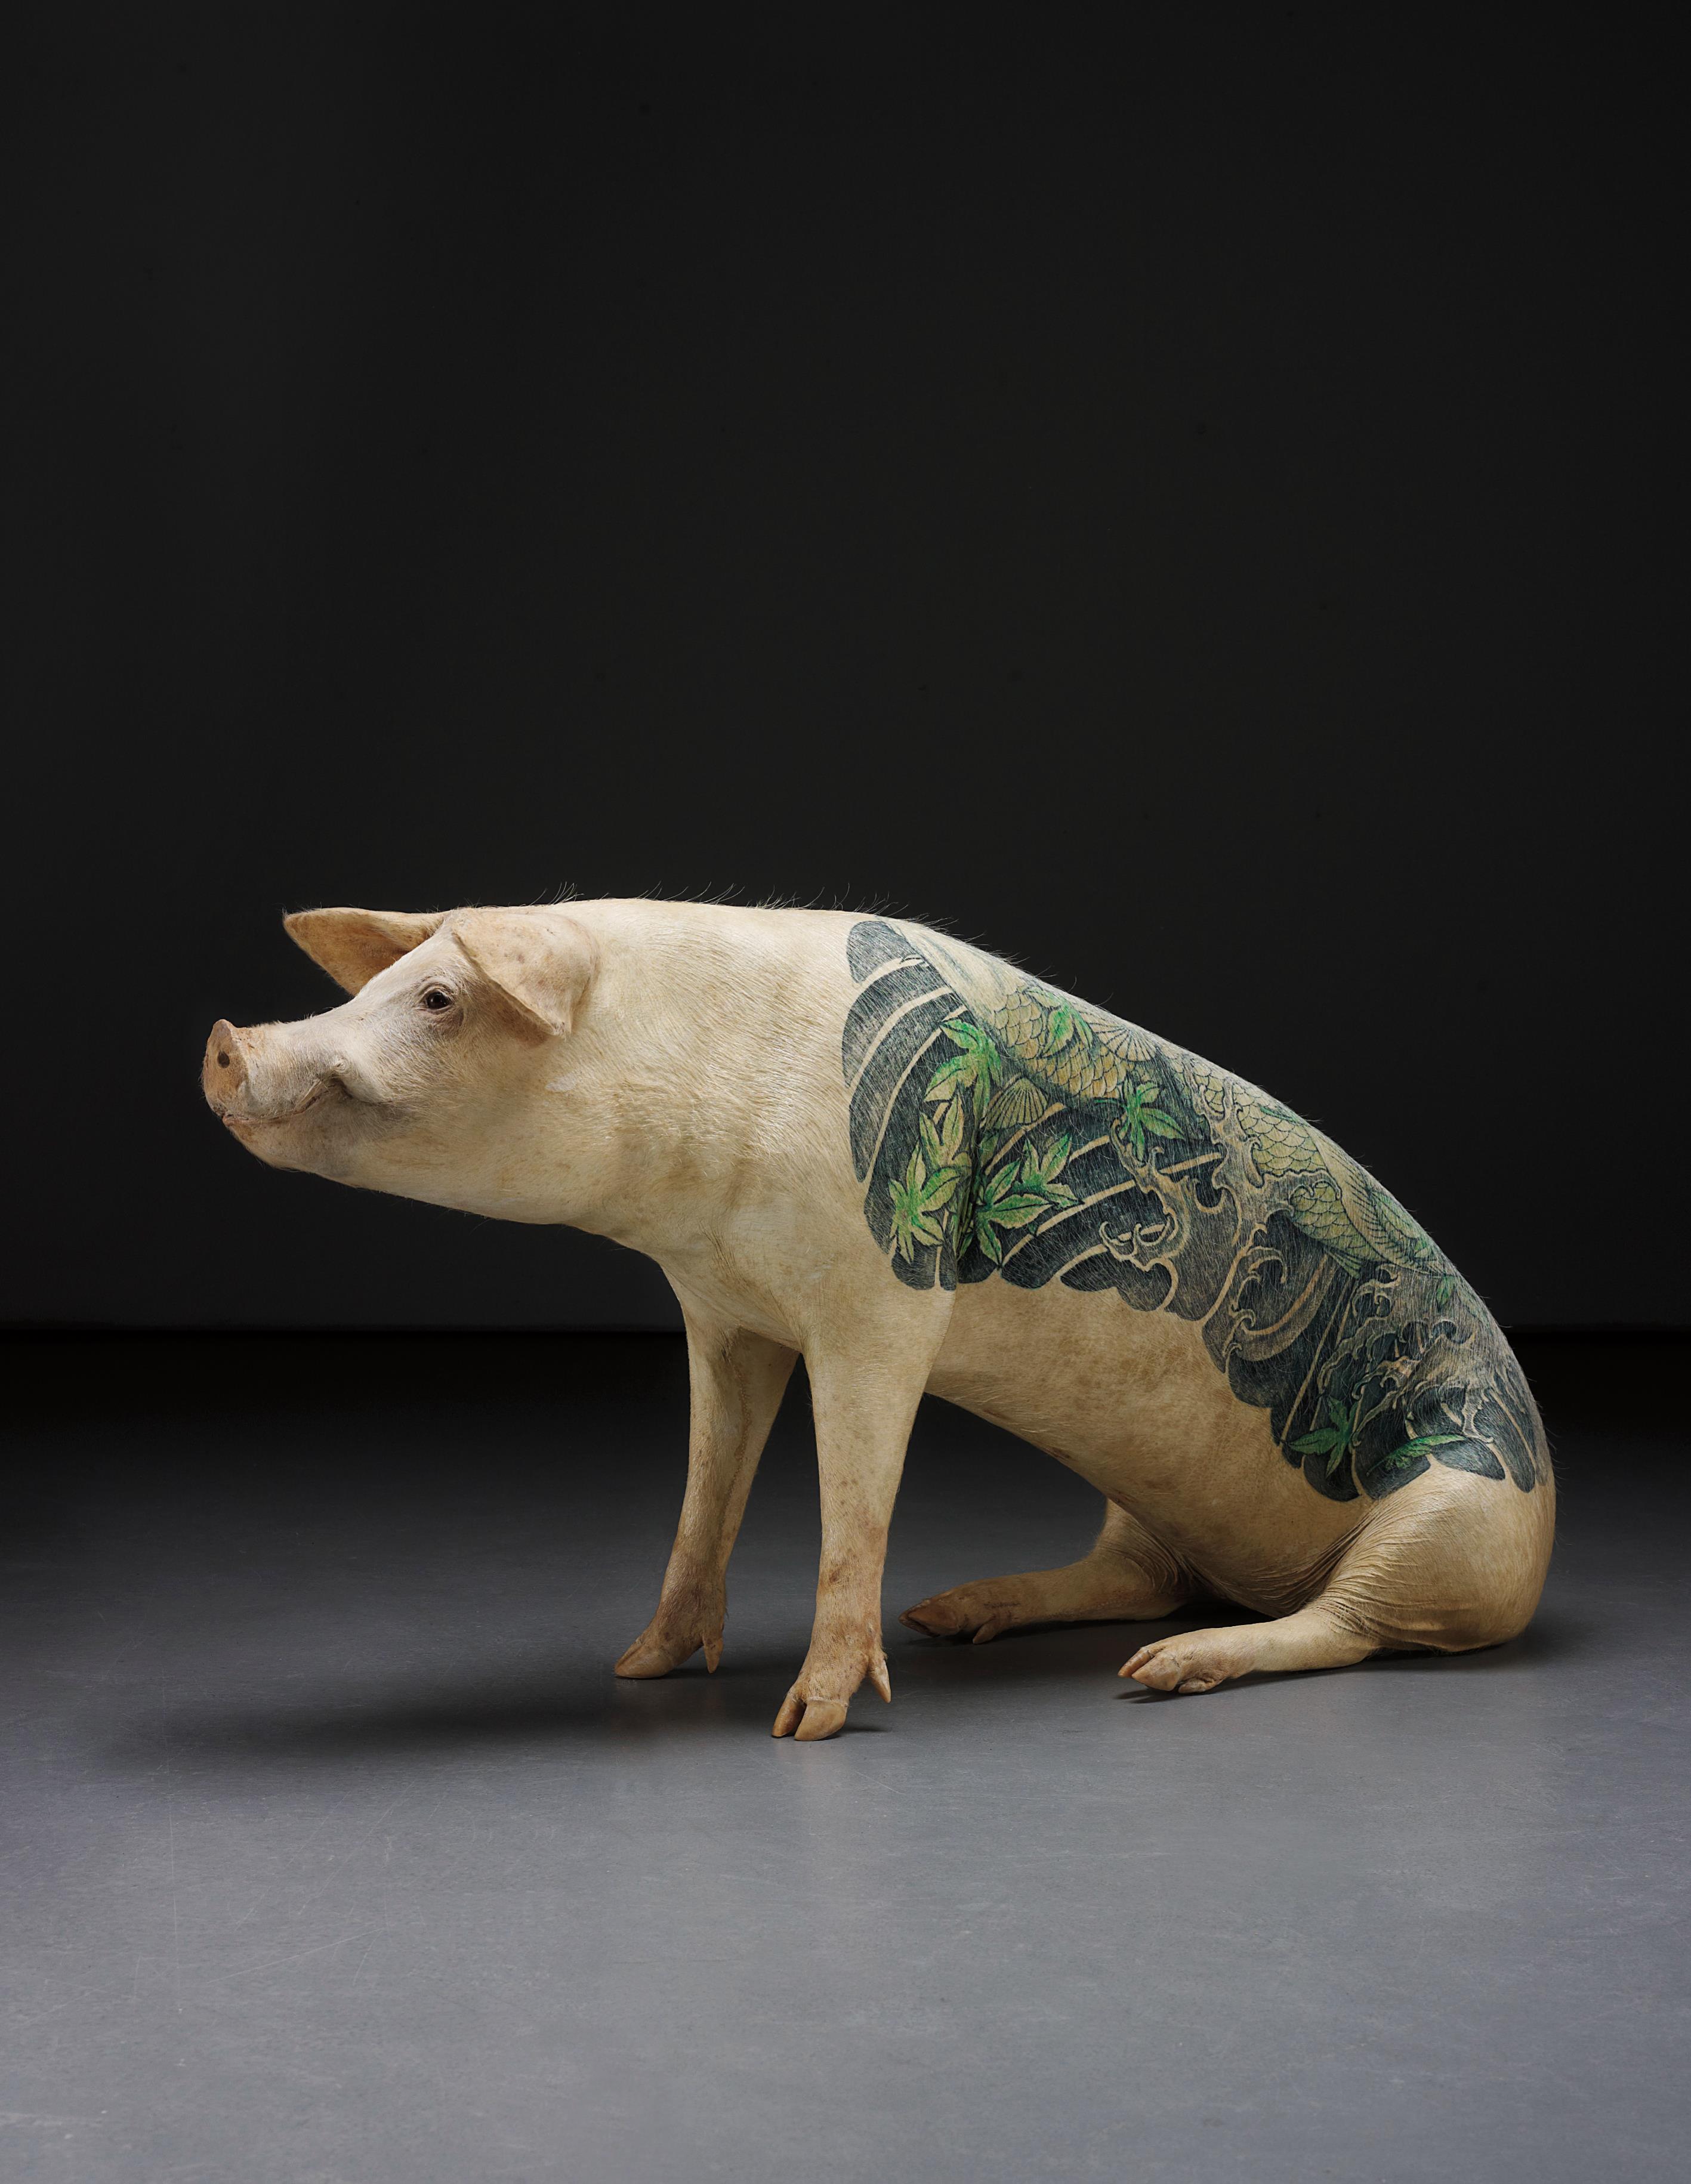 chinese pig tattoo